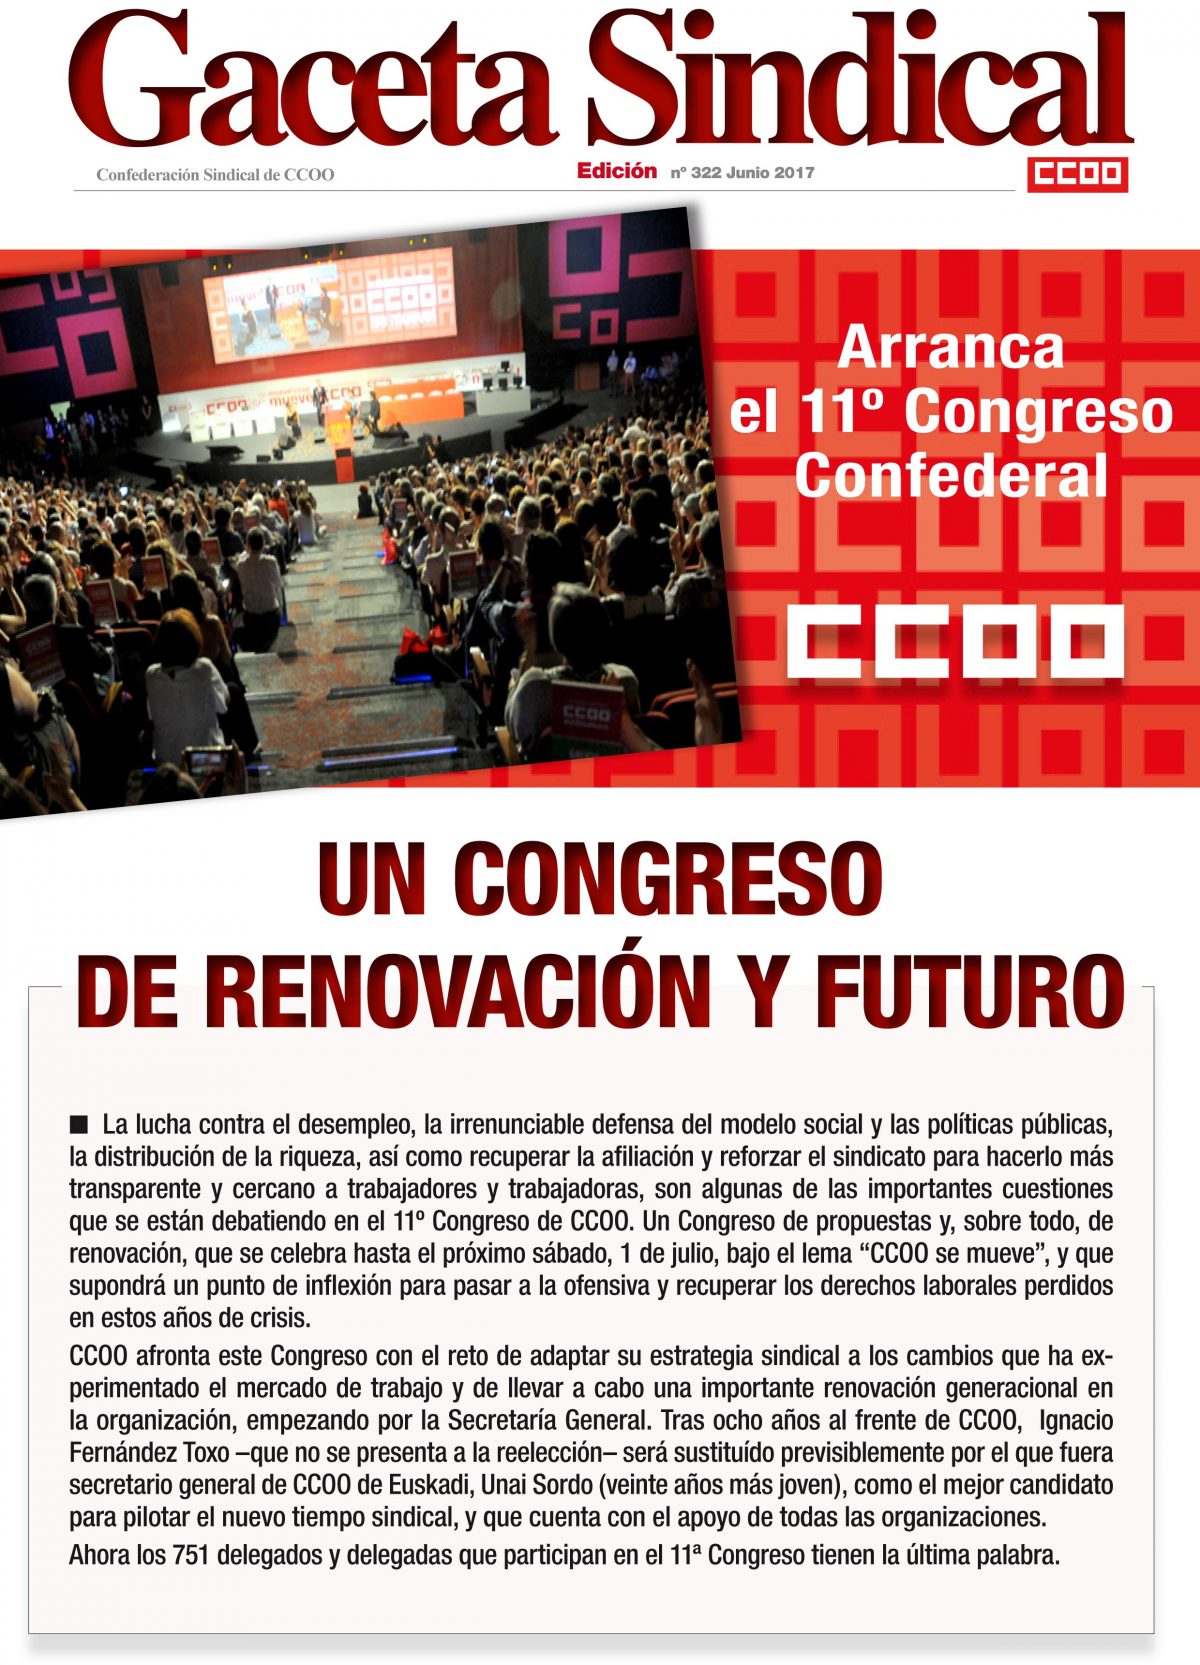 Gaceta Sindical 11 Congreso confederal de CCOO